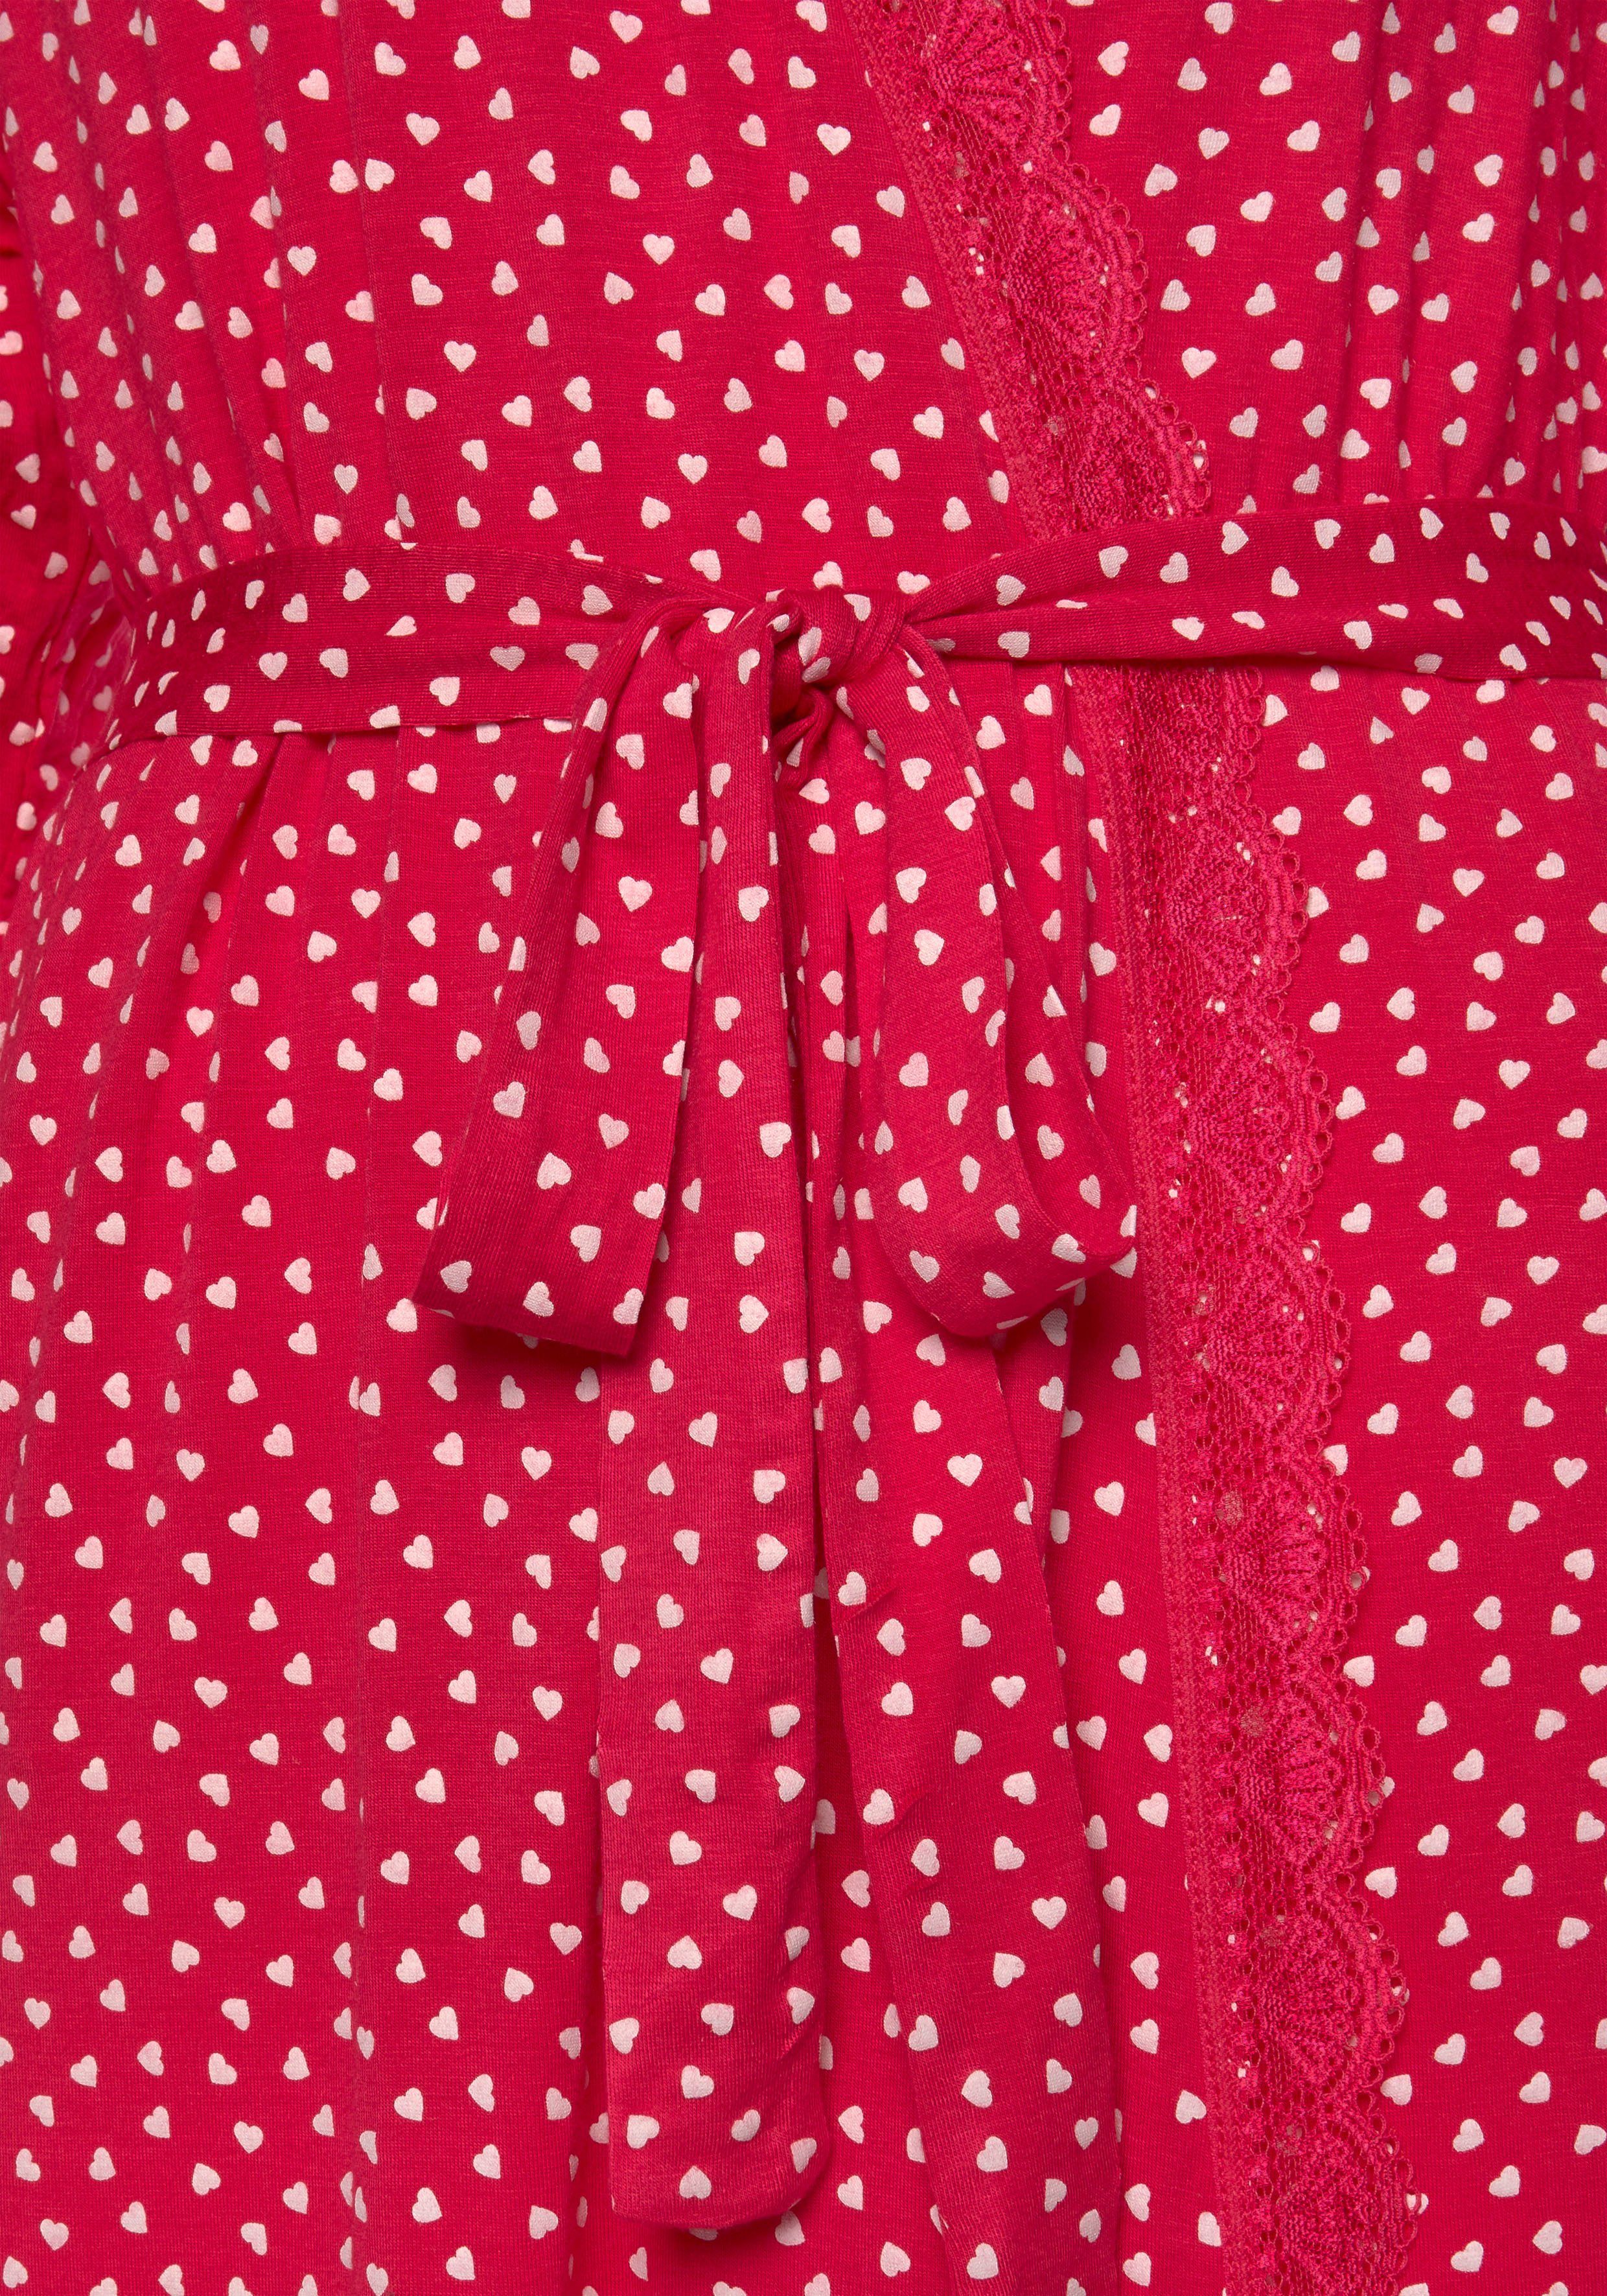 s.Oliver Kimono, Kurzform, Single-Jersey, pink-gemustert Herzchendruck mit Spitze und Gürtel